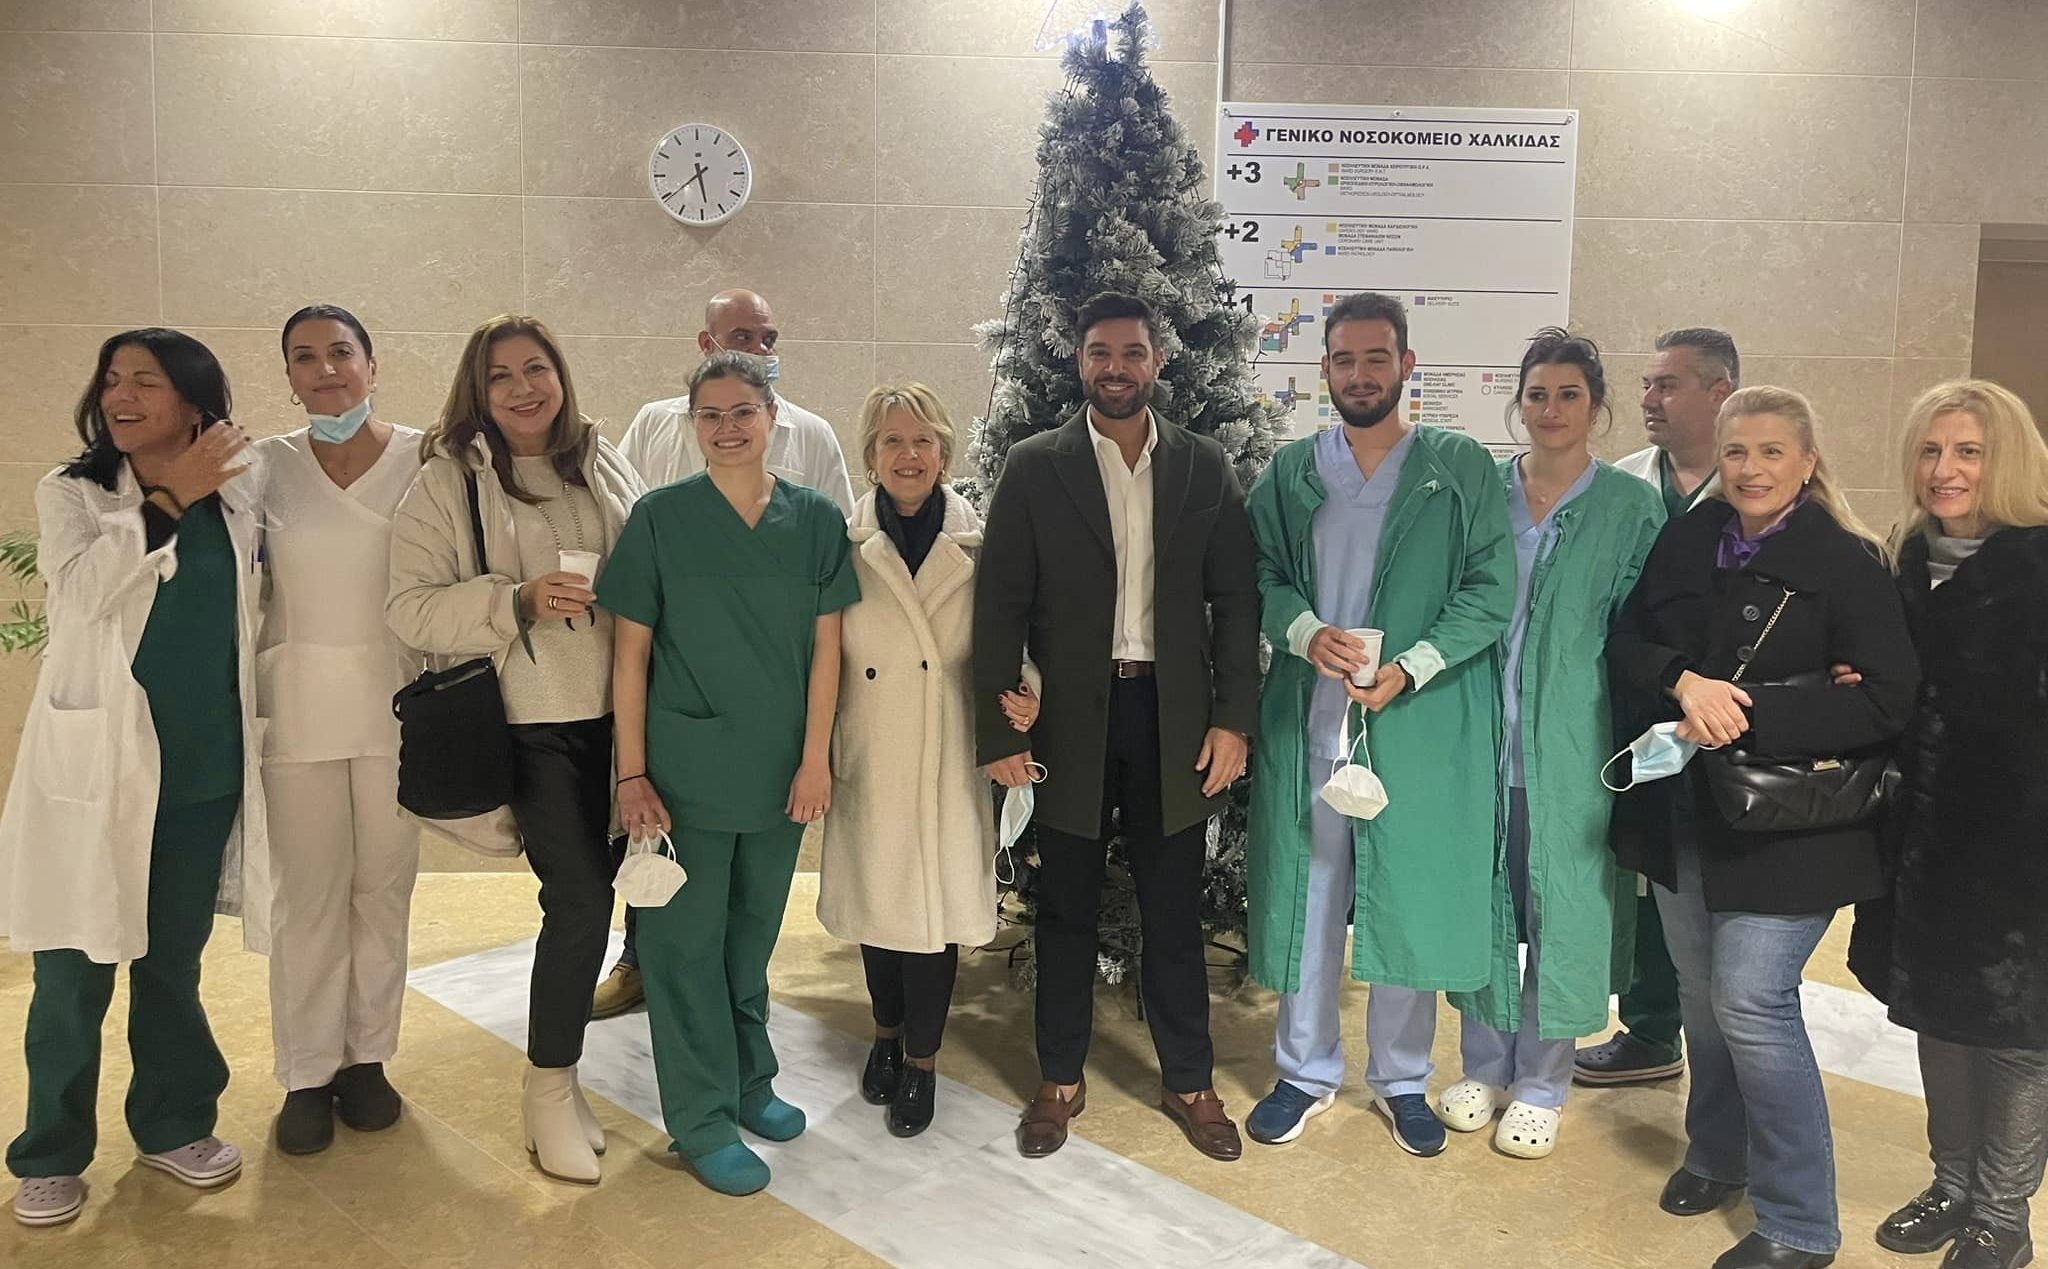 Εύβοια: Άναψαν τα λαμπιόνια στο Χριστουγεννιάτικο δέντρο του Νοσοκομείου Χαλκίδας (pics)